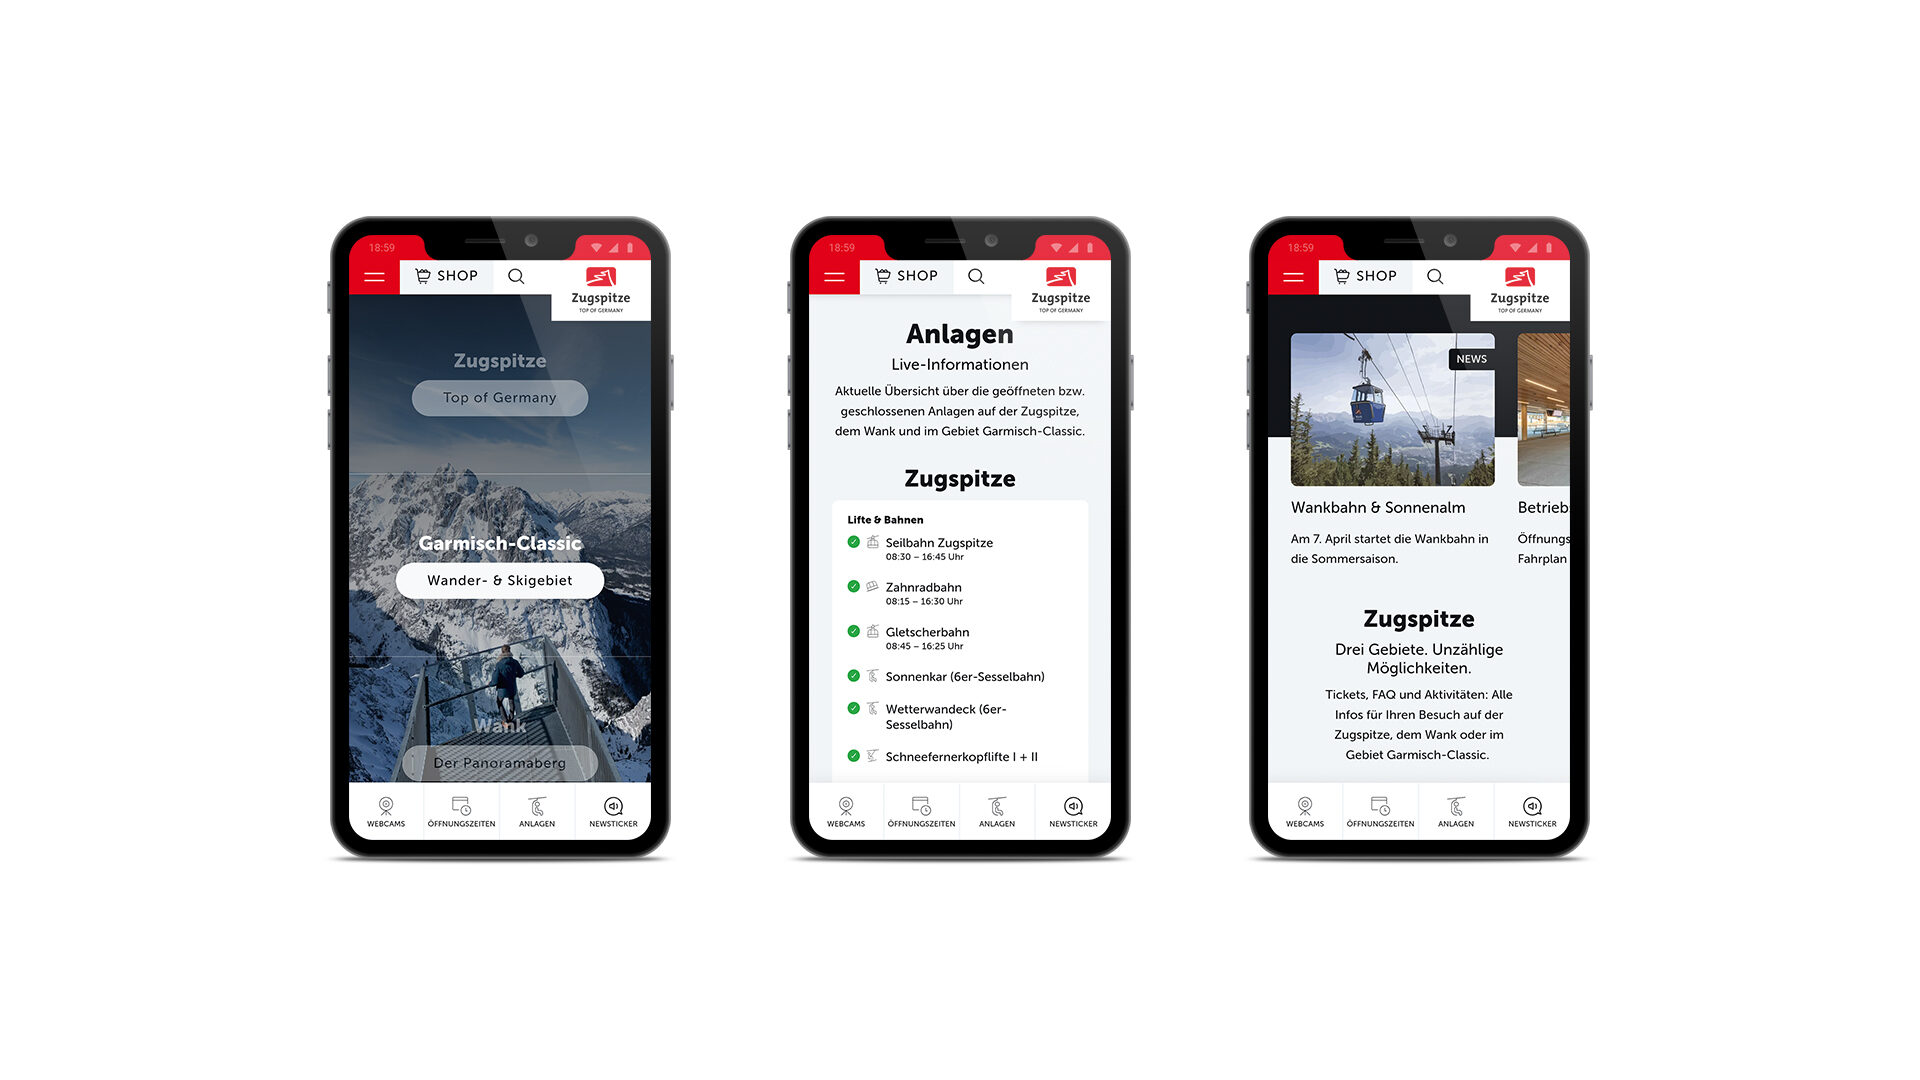 Mockup von der neuen Website der Bayerischen Zugspitzbahn Bergbahn AG. Dargestellt auf drei Smartphones.